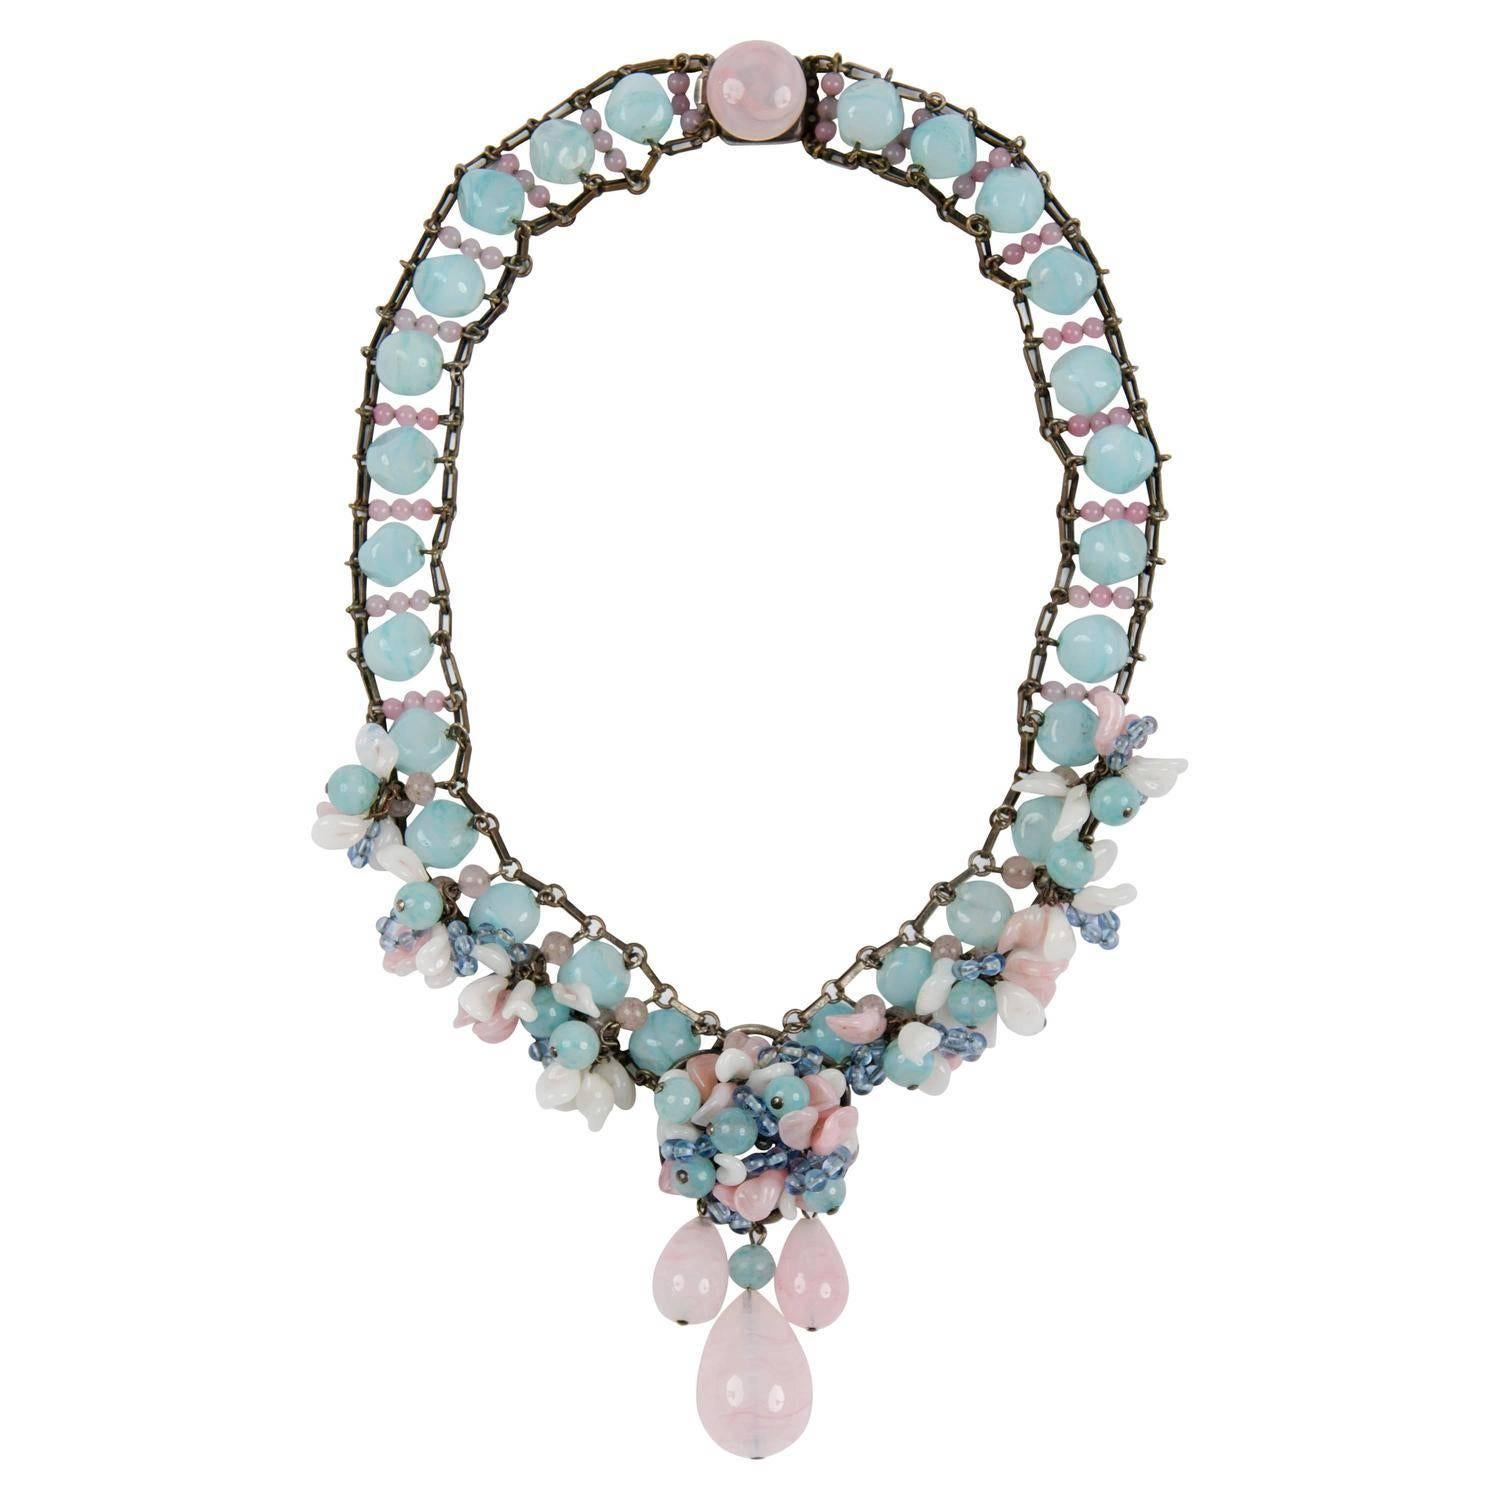 Rousselet glass pendant necklace, 1950s